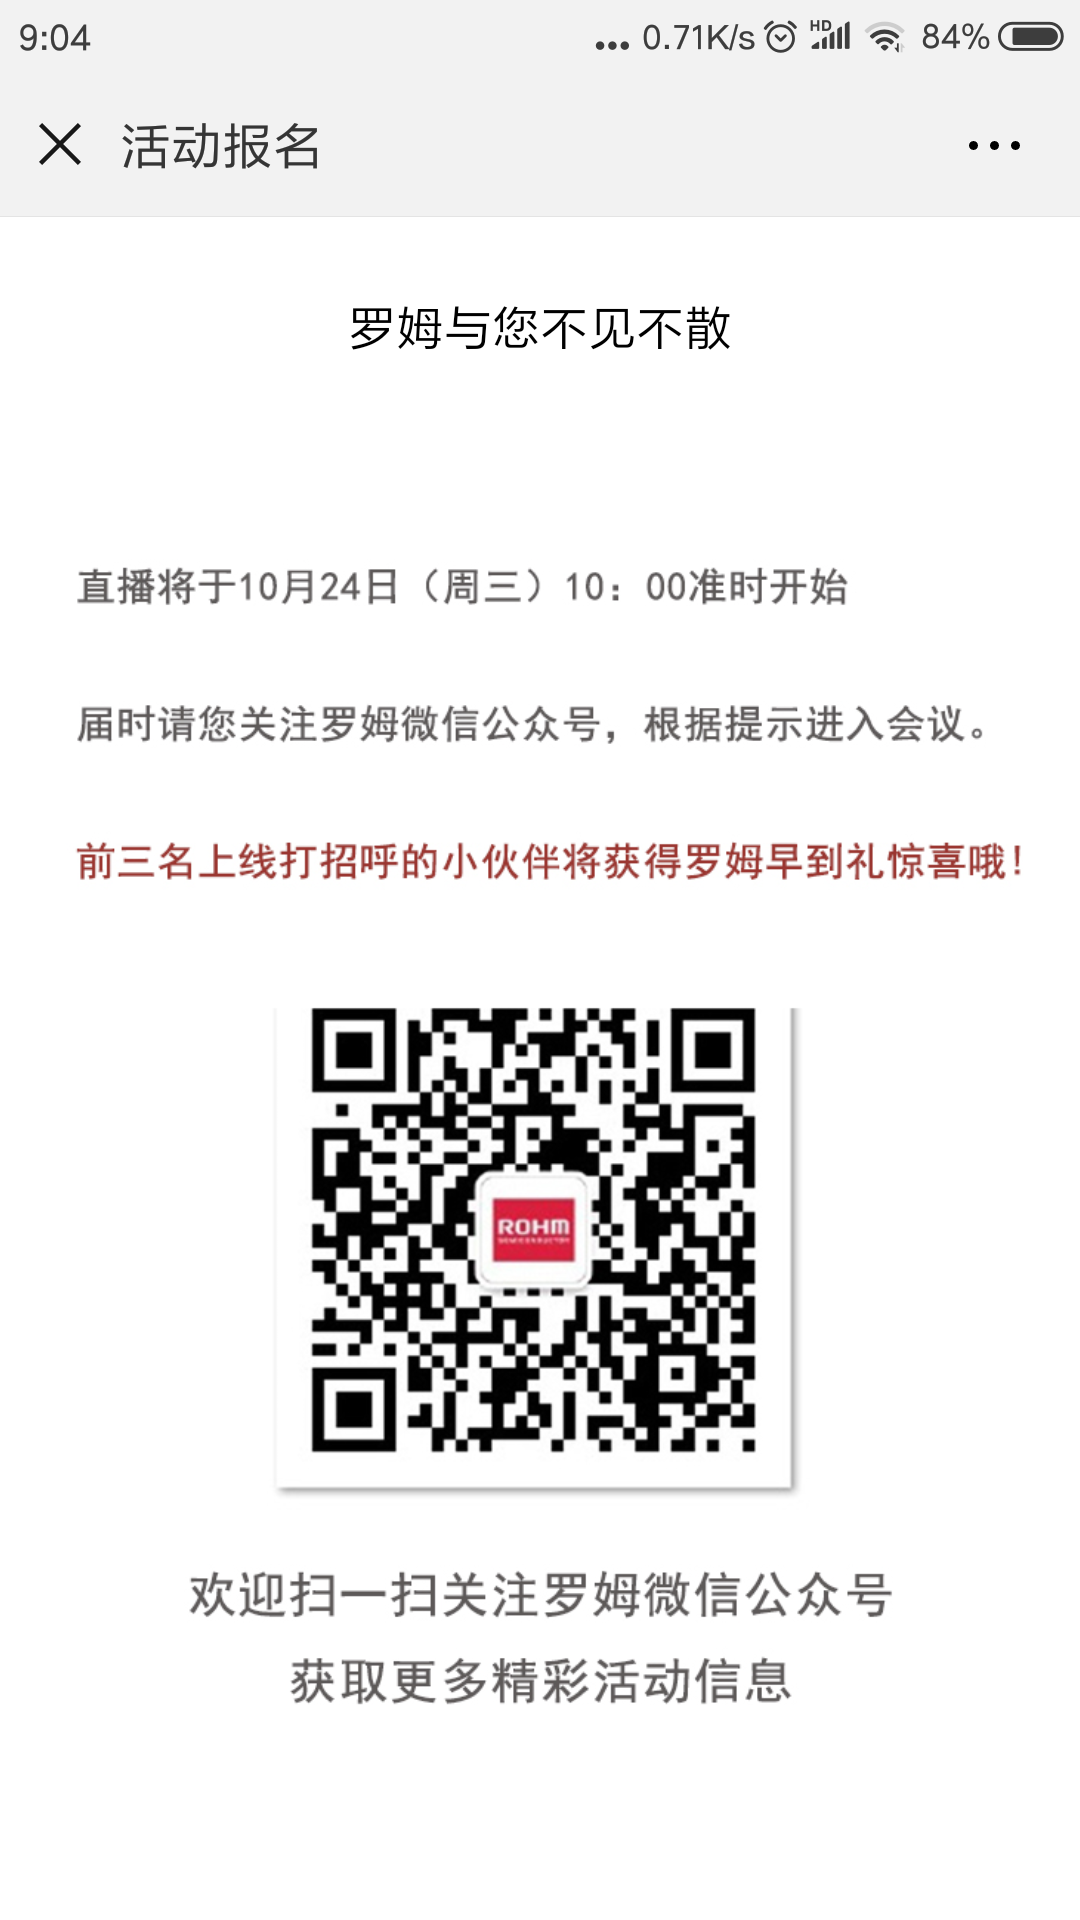 Screenshot_2018-09-28-09-04-06-416_com.tencent.mm.png